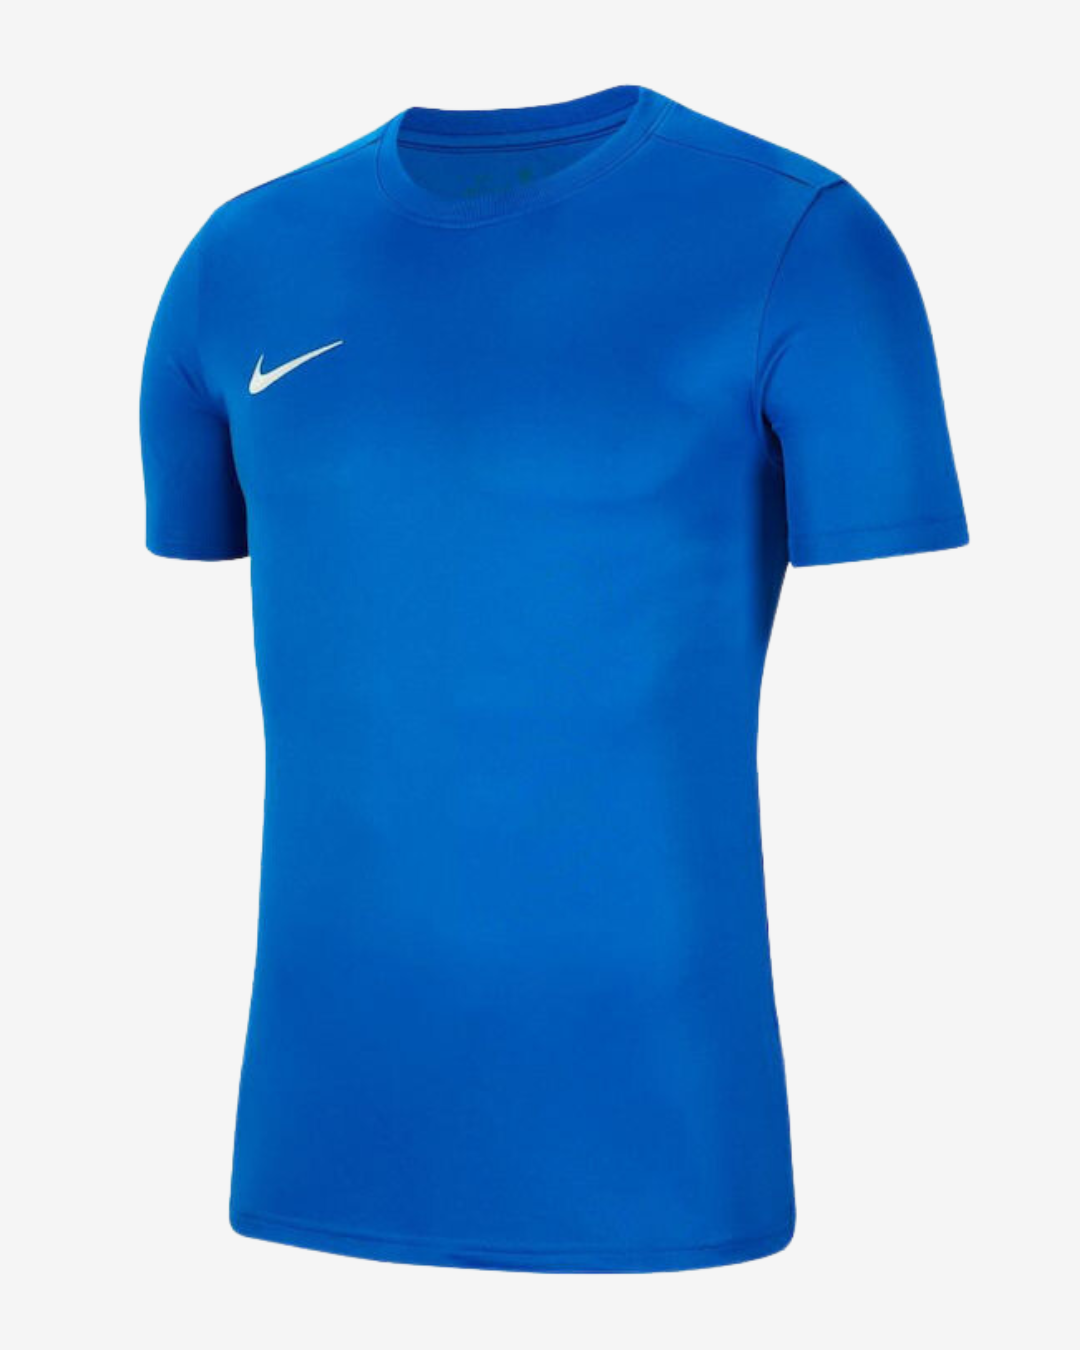 Nike Dri-fit park 7 t-shirt - Blå - Str. XXL - Modish.dk